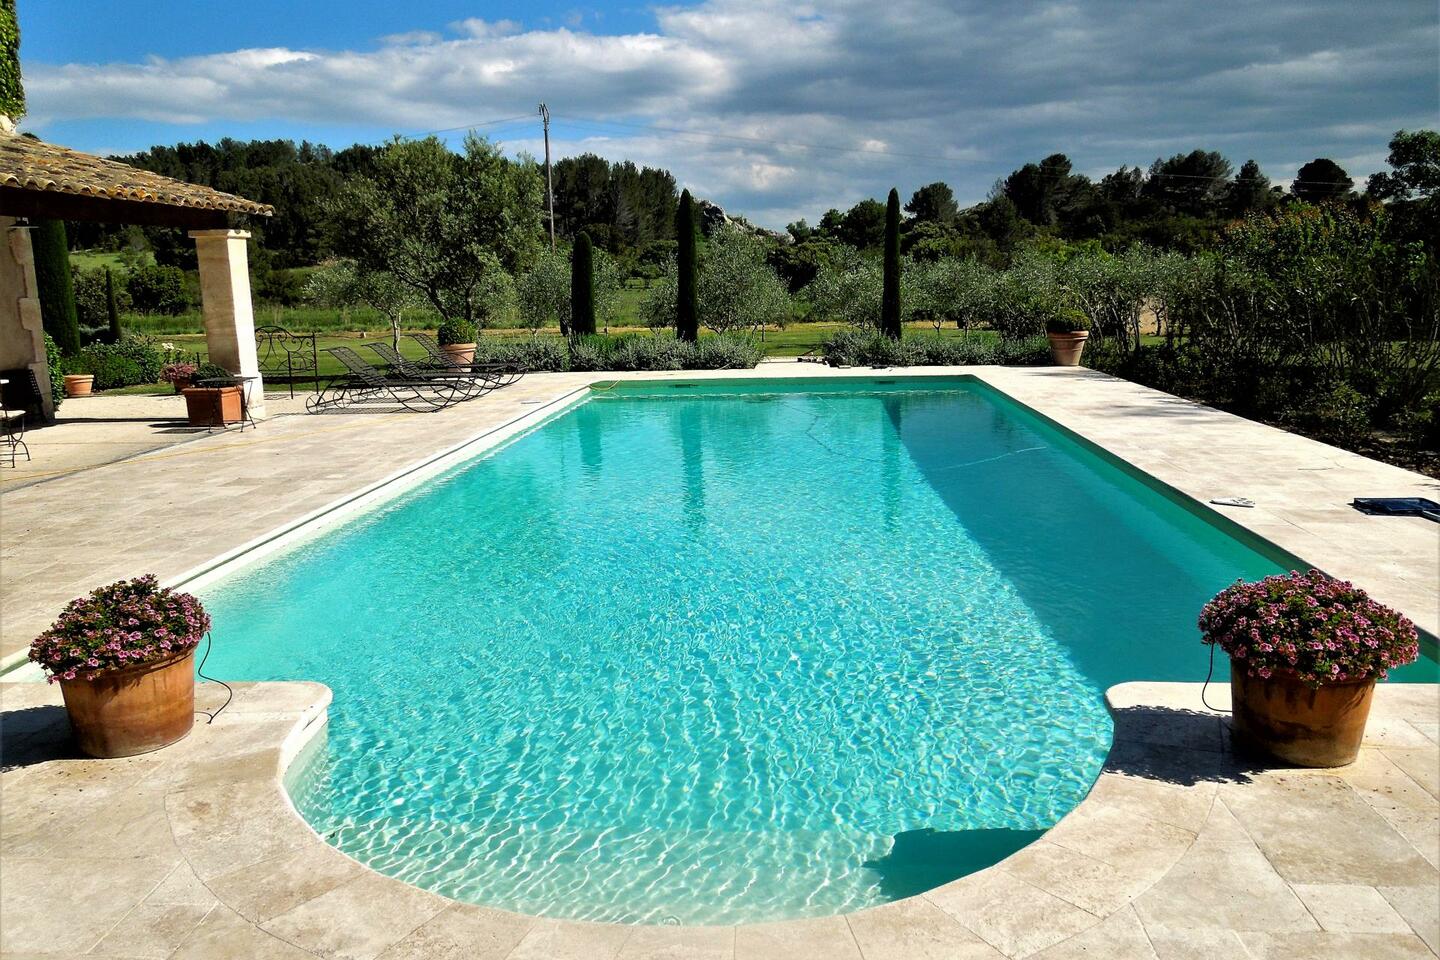 6 - Maison Paradou: Villa: Pool - Maison Paradou: piscine de 15m x 6m, toujours au soleil